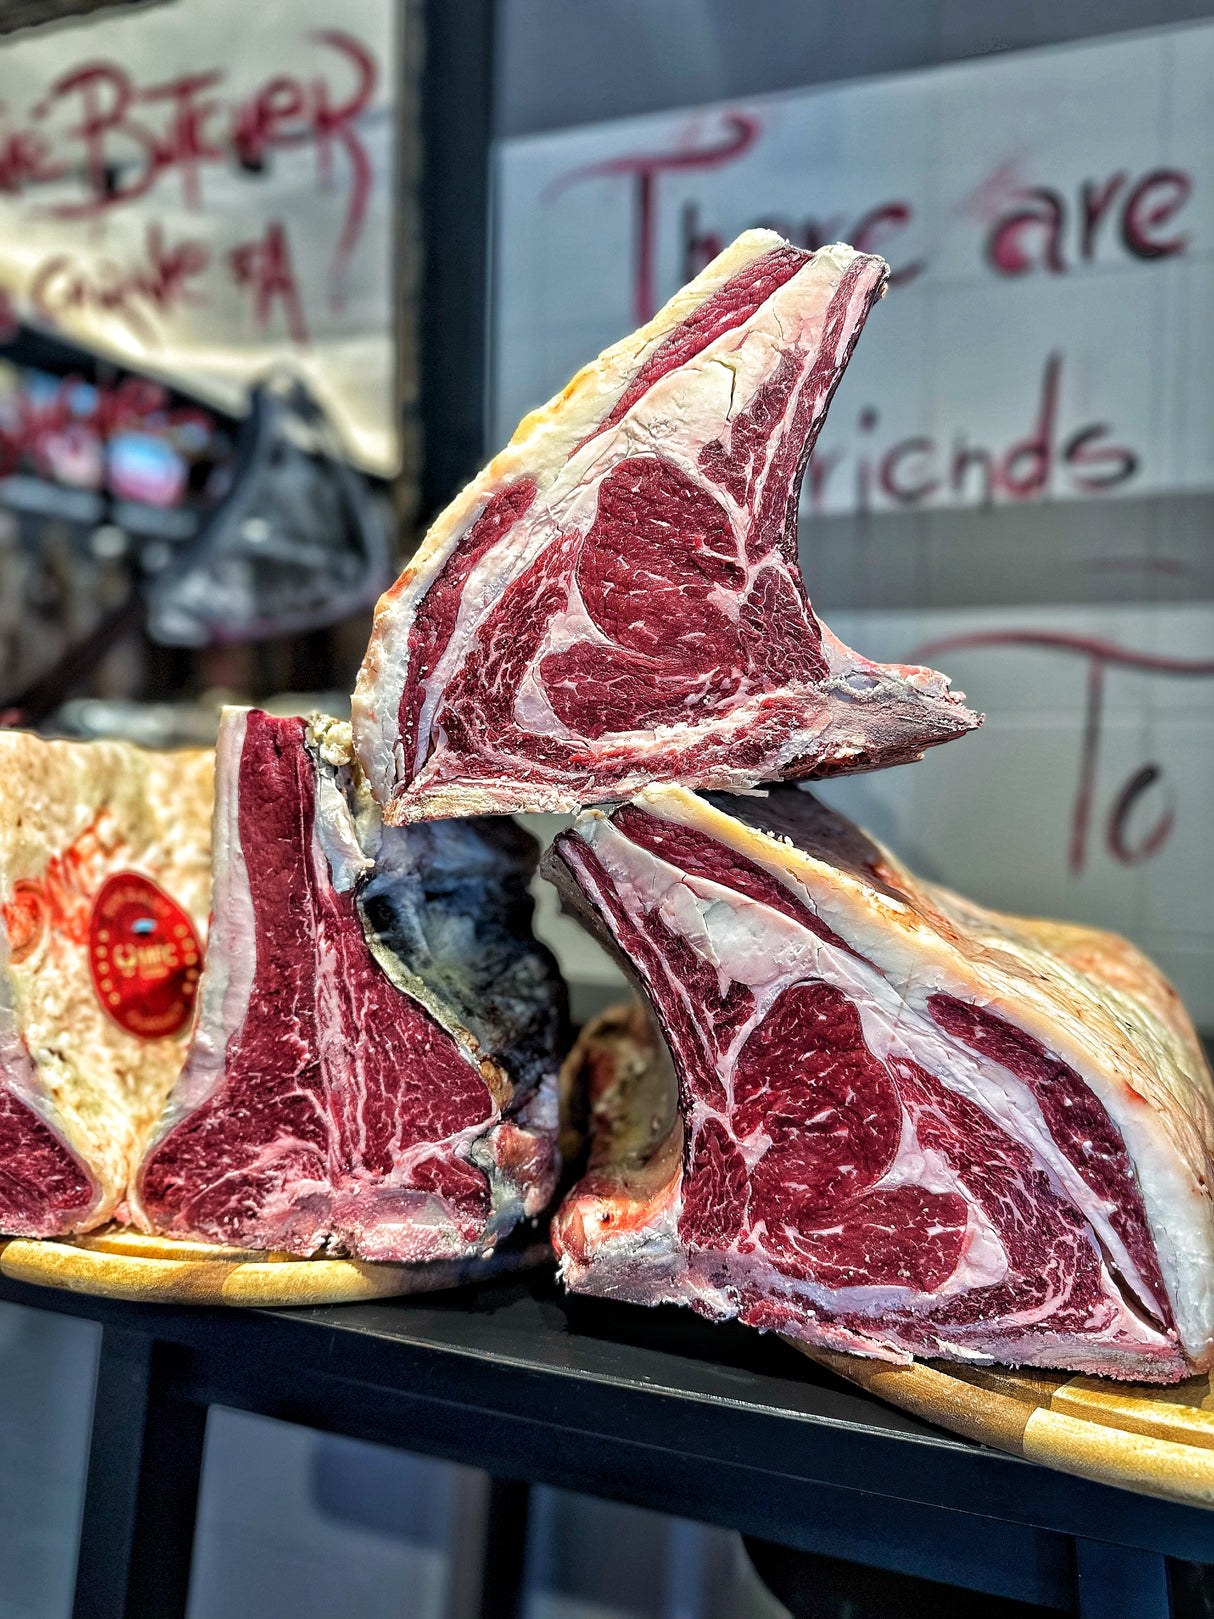 Fiorentina Marilla Rubia Gallega 50 Giorni Dryaged “Selezione Butcher”